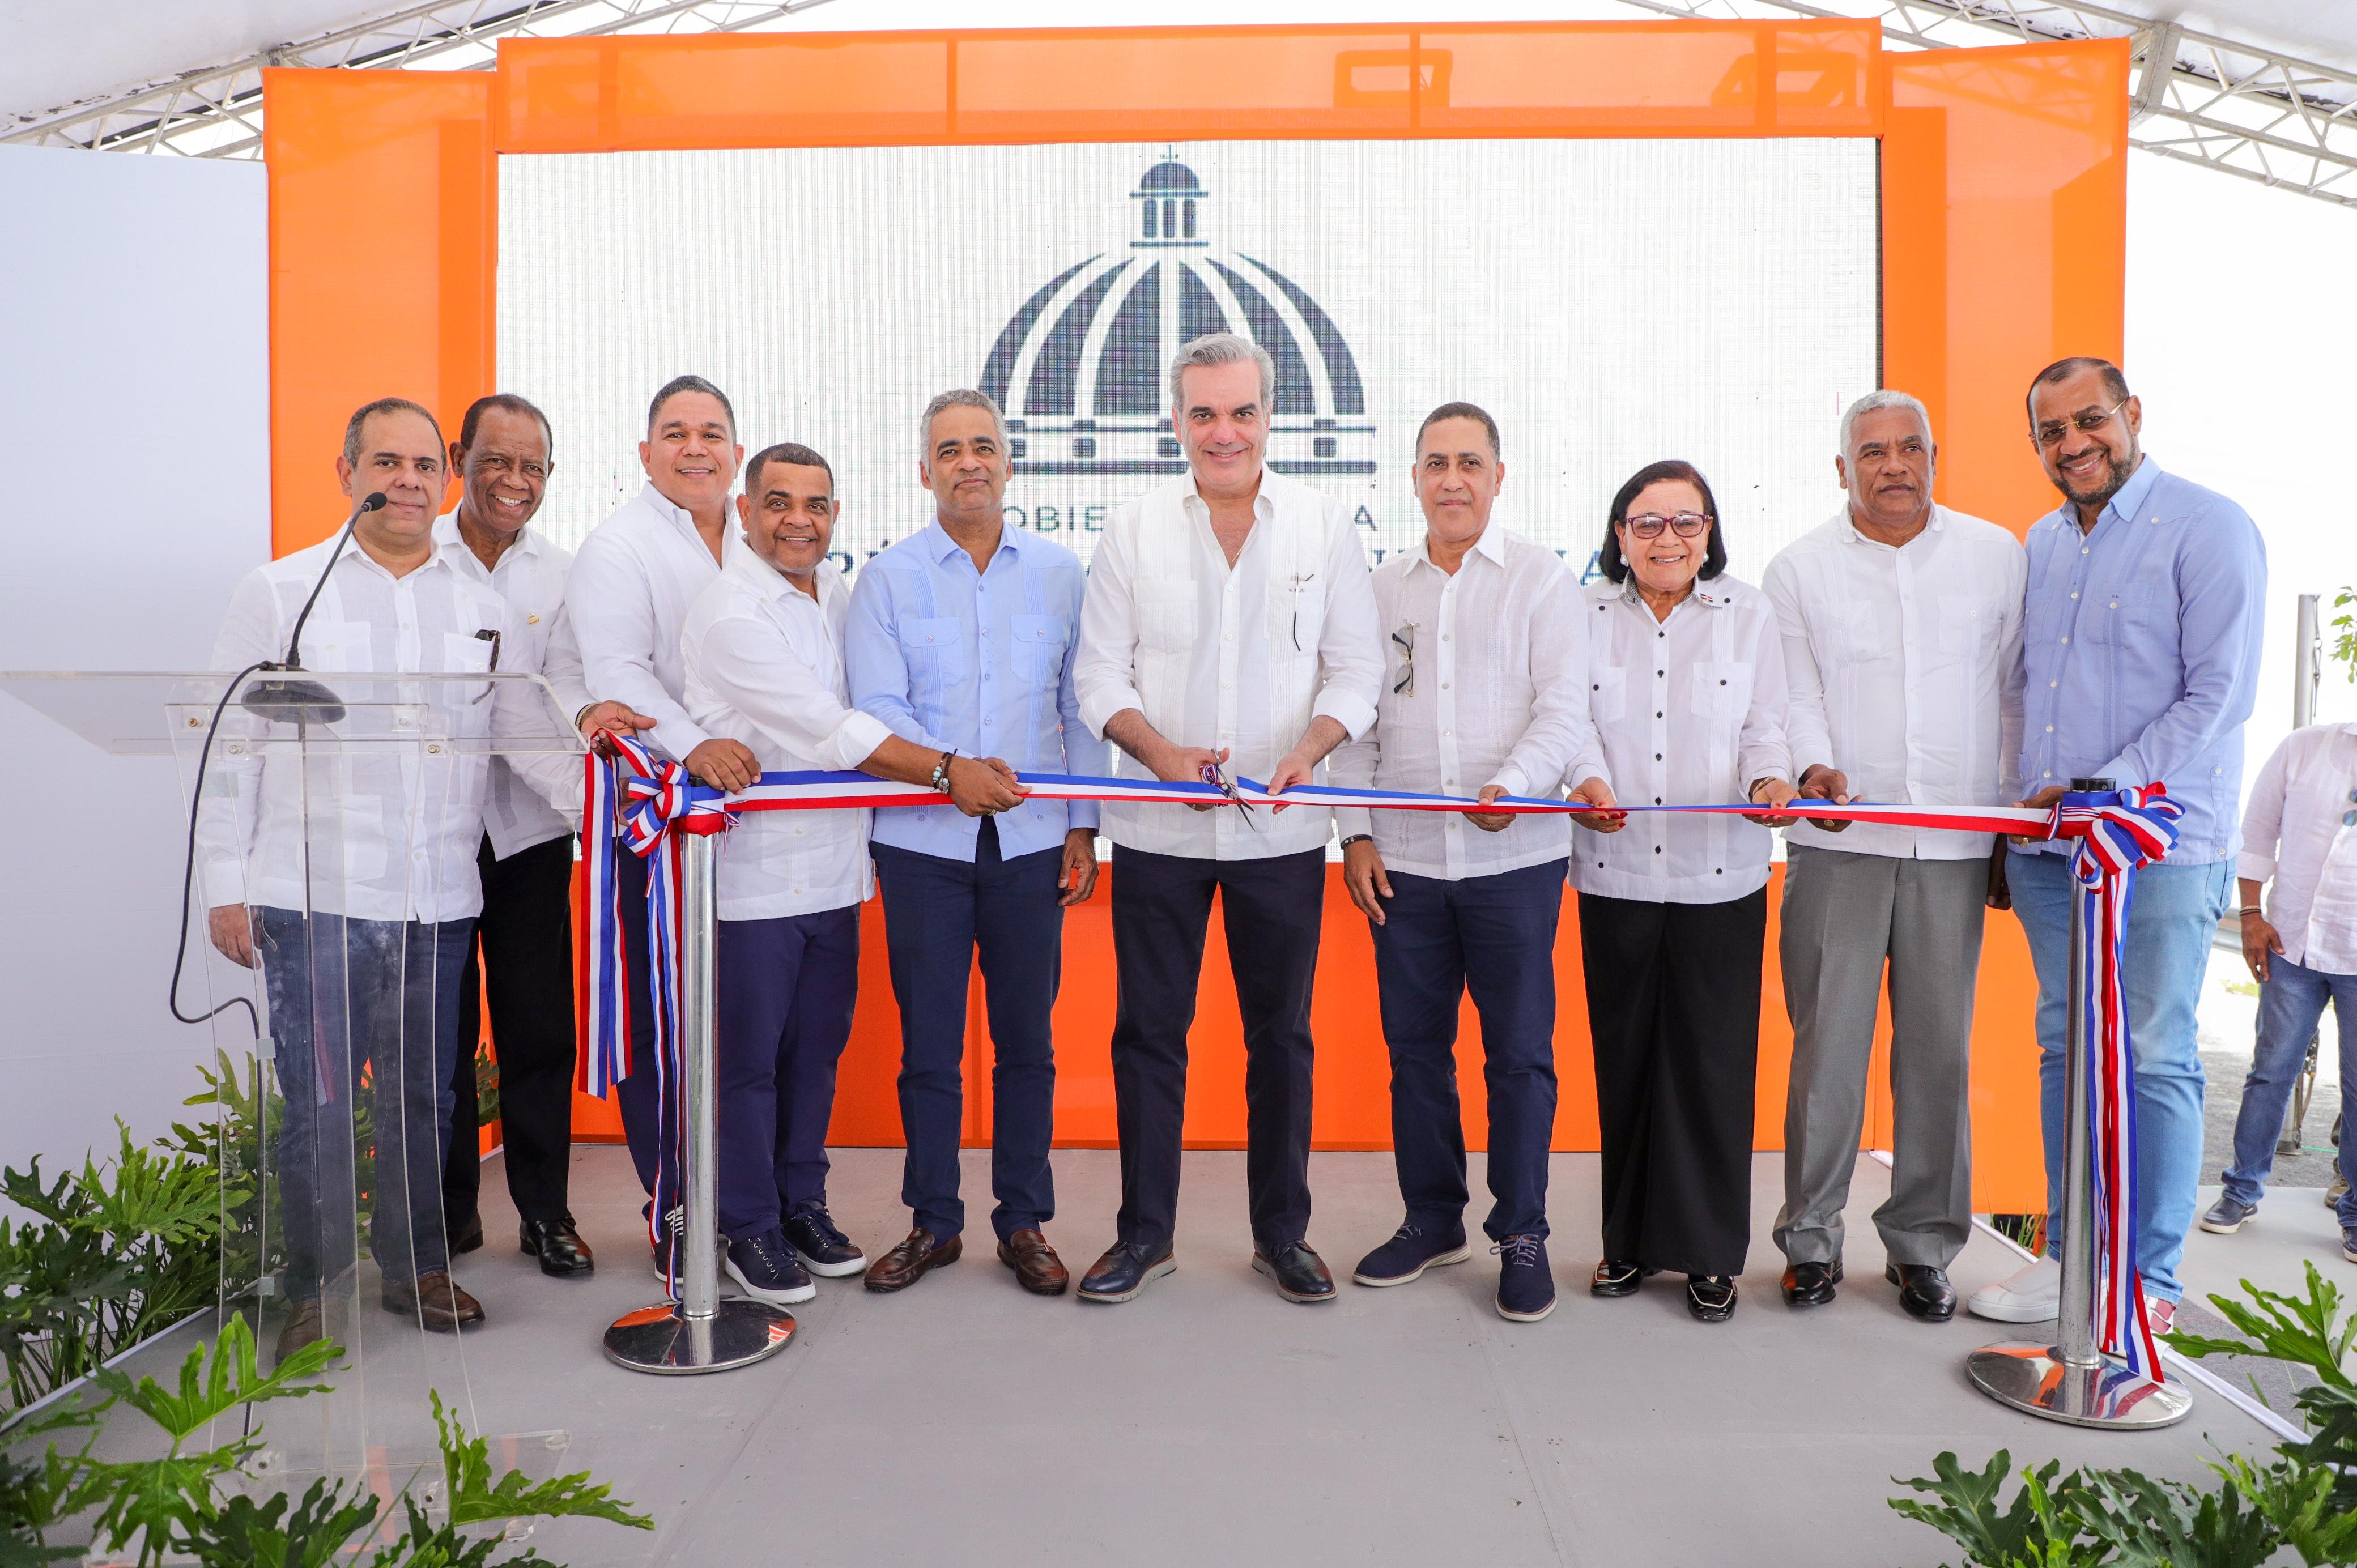 REPÚBLICA DOMINICANA: Presidente Abinader inaugura primer tramo carretero entre Barahona y Enriquillo que incluye el Mirador San Rafael, el Mirador de Enriquillo, el puente...